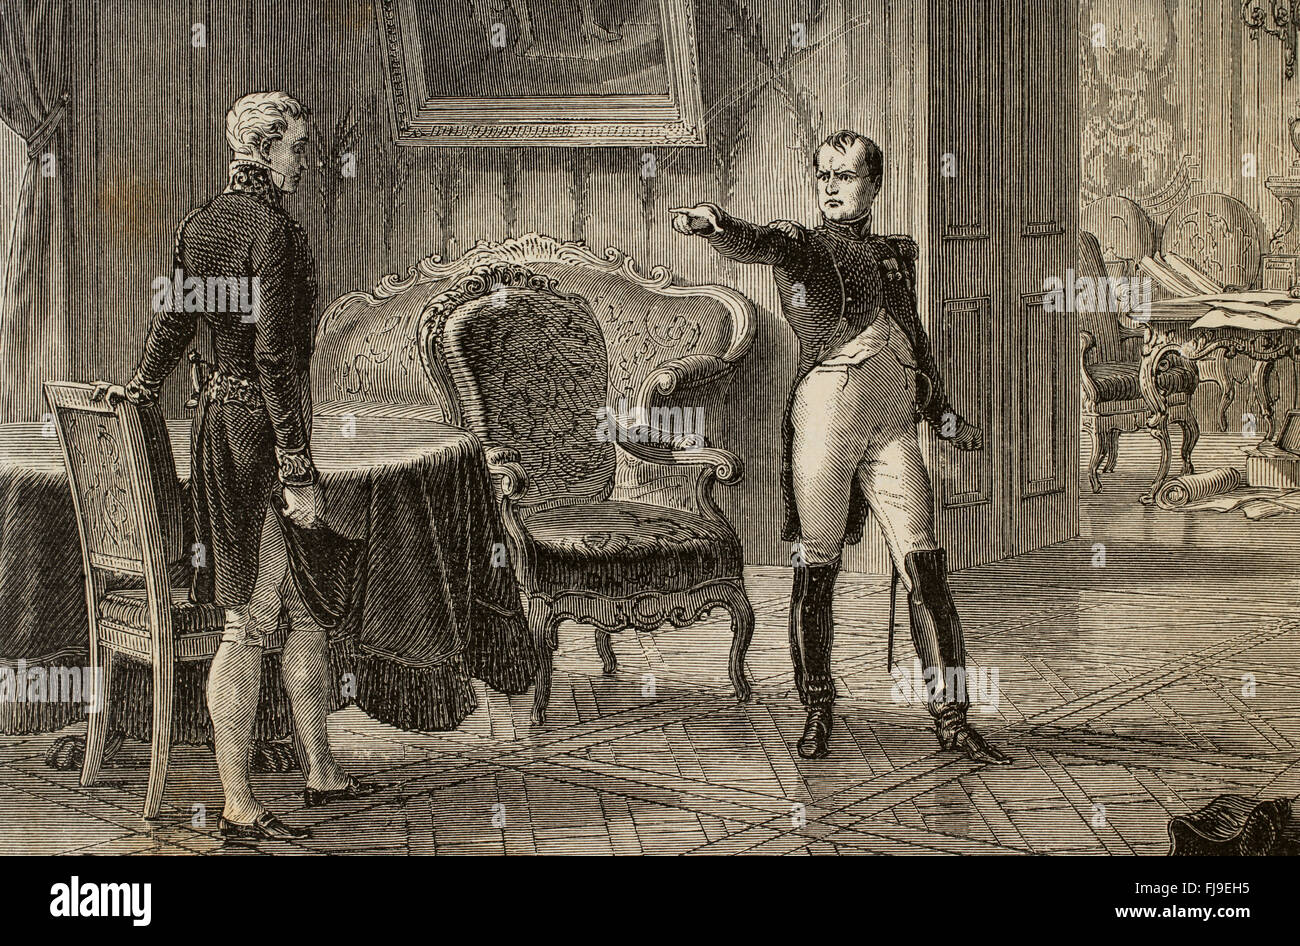 Kaiser Napoleon Bonaparte (1769-1821) trifft sich mit Klemens von Metternich (1773-1859) beim Desden 1813. Kupferstich von E. Deschamps. Historia de Francia, 1886. Stockfoto